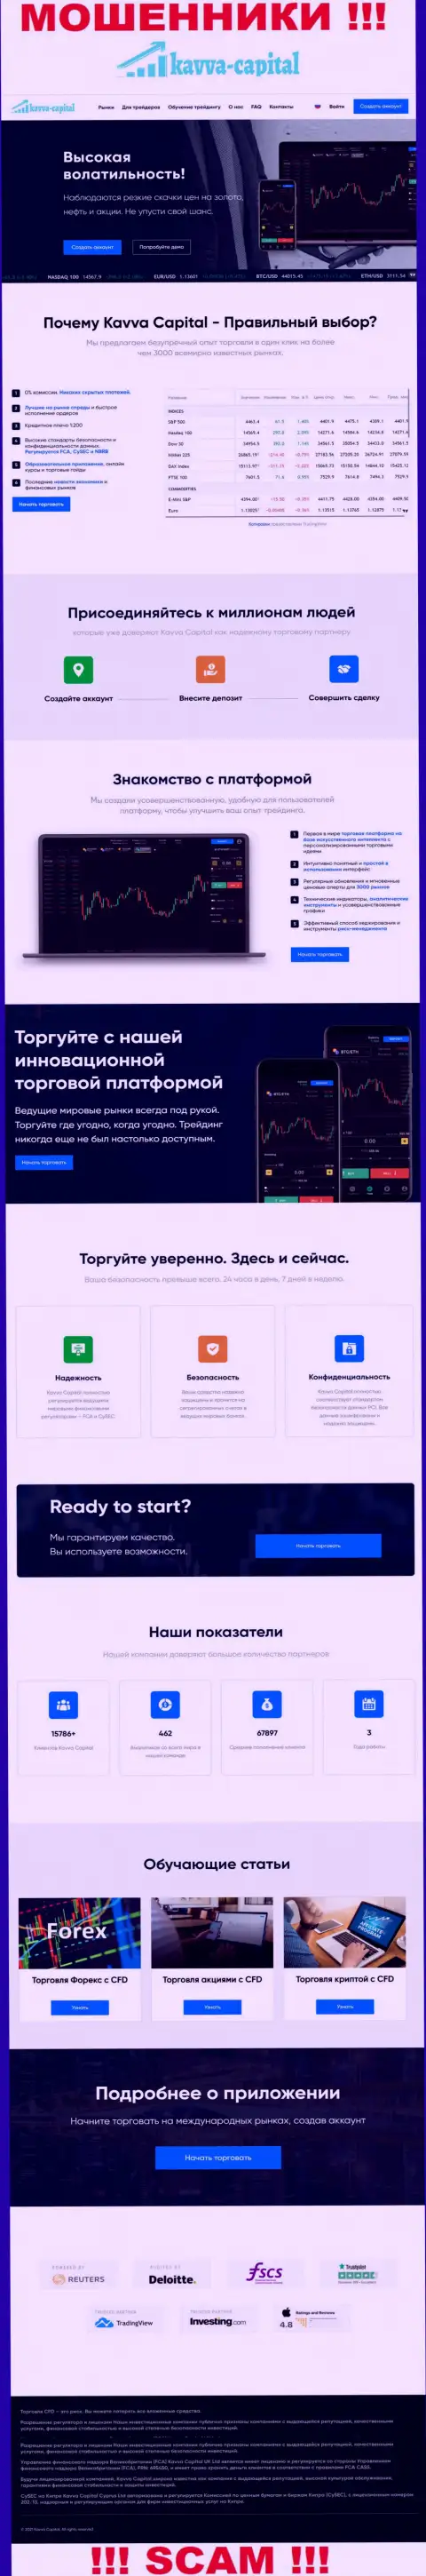 Официальный сайт мошенников Kavva Capital, забитый инфой для лохов